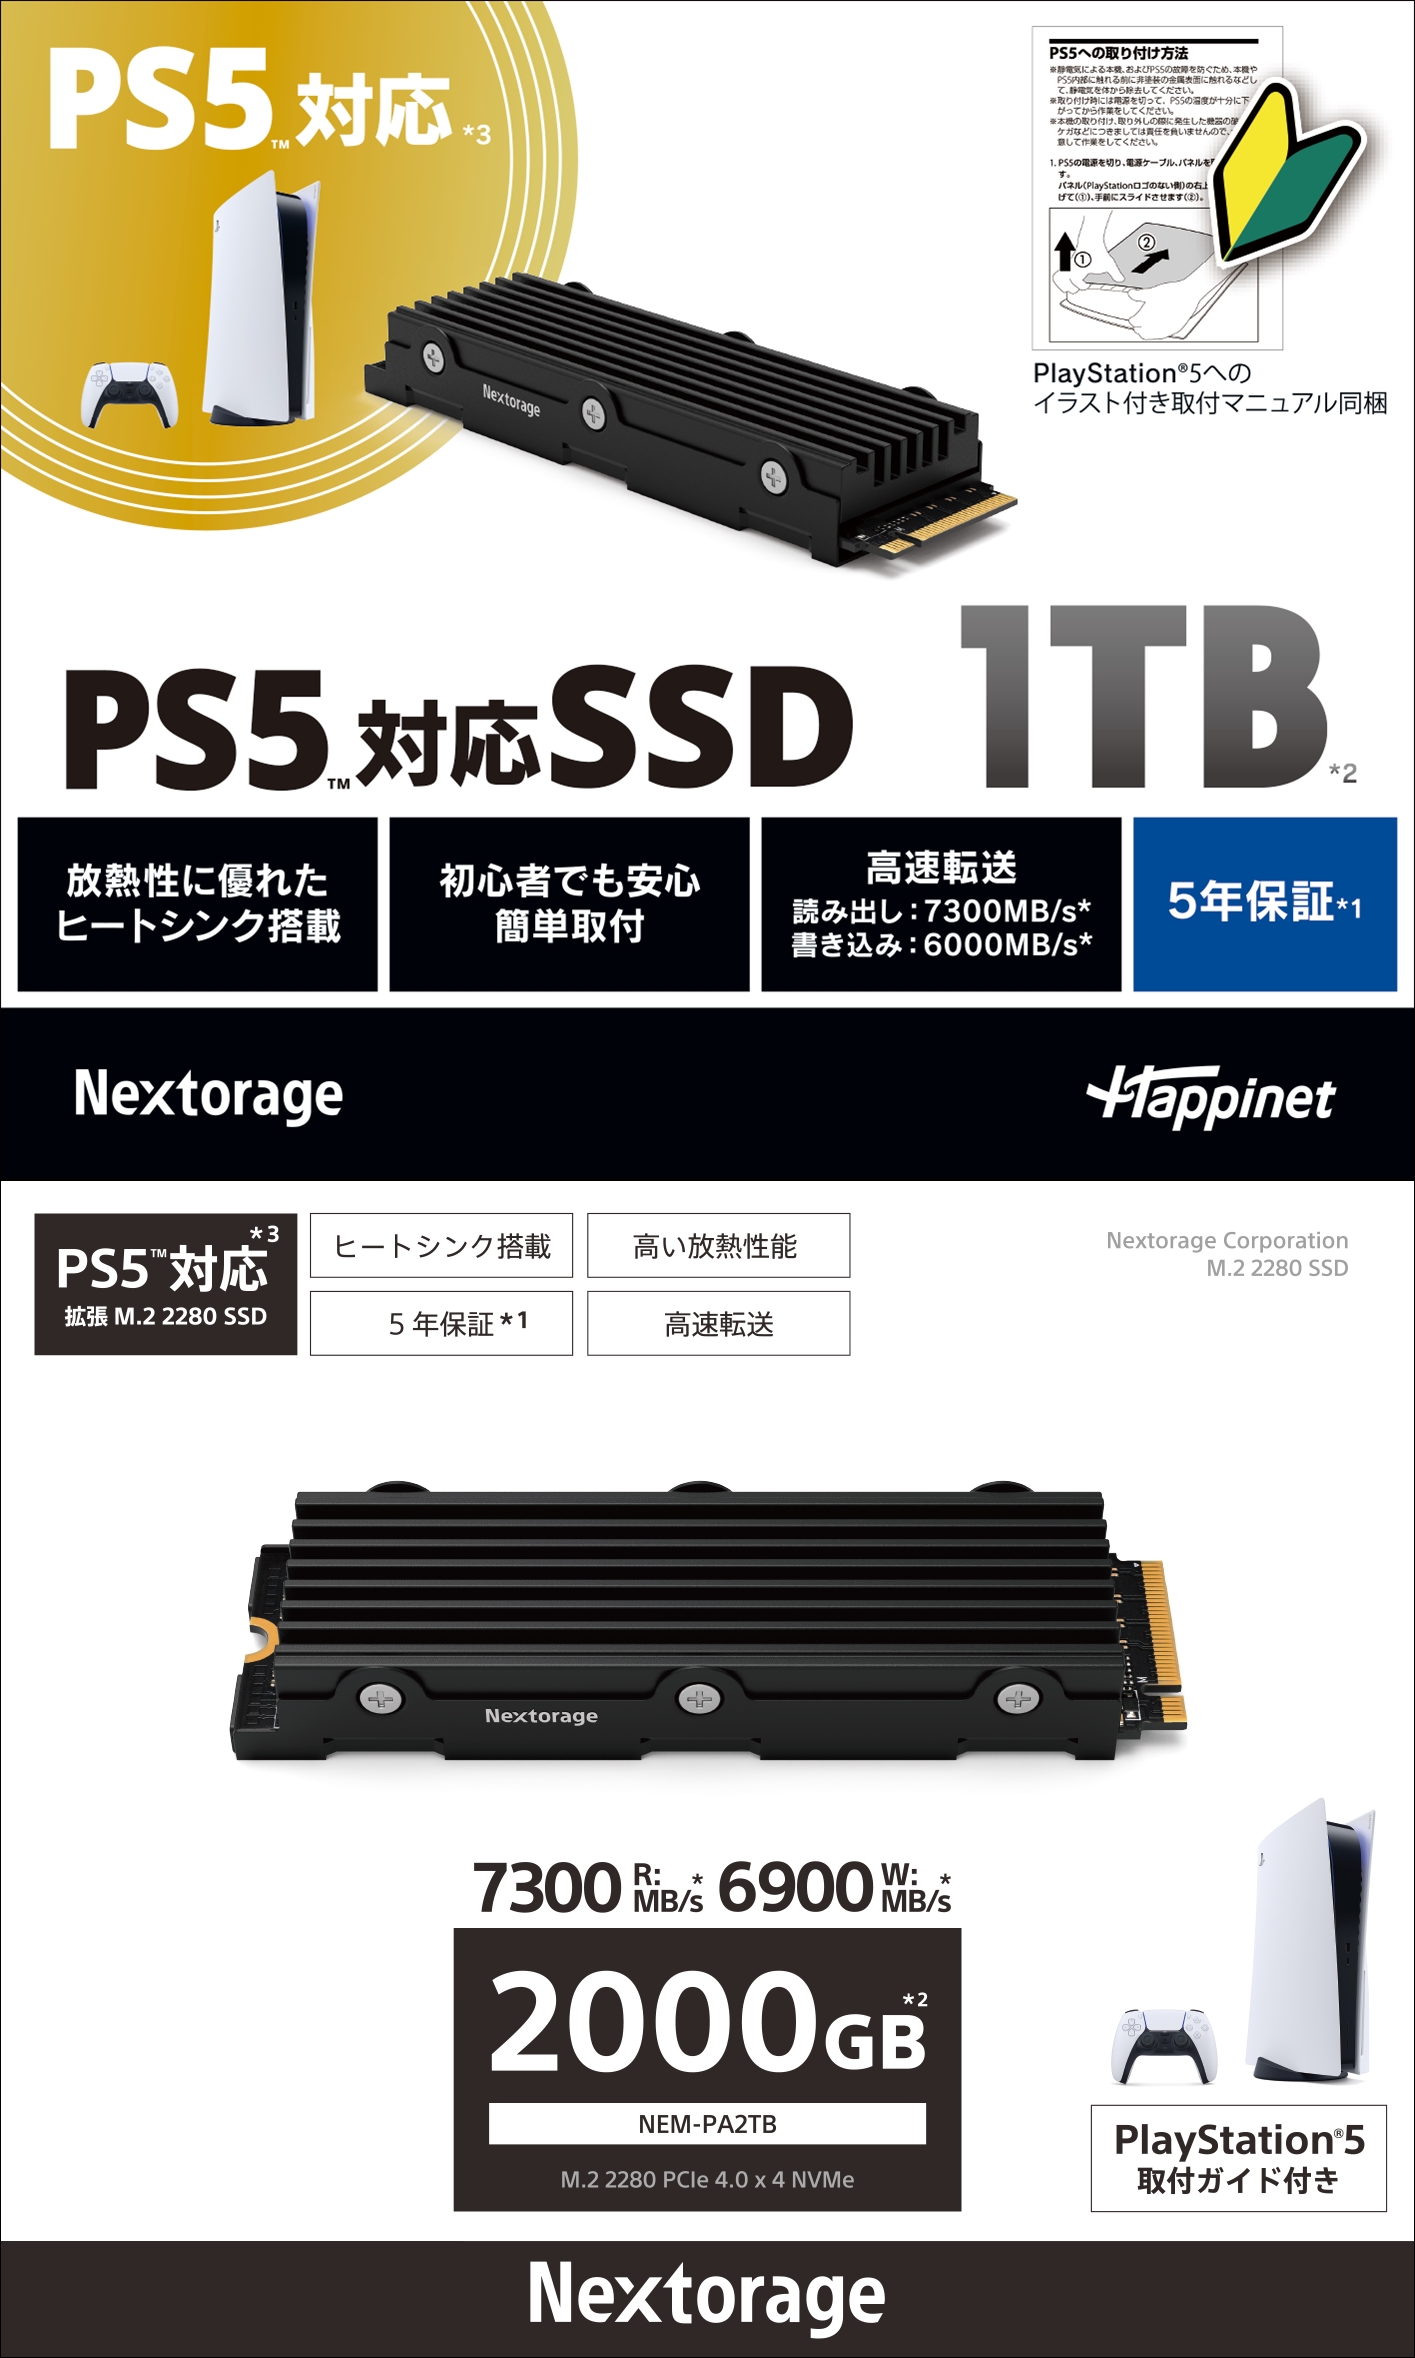 Nextorage PS5対応 1TB SSD NEM-PA M.2 2280 neuroid.uprrp.edu